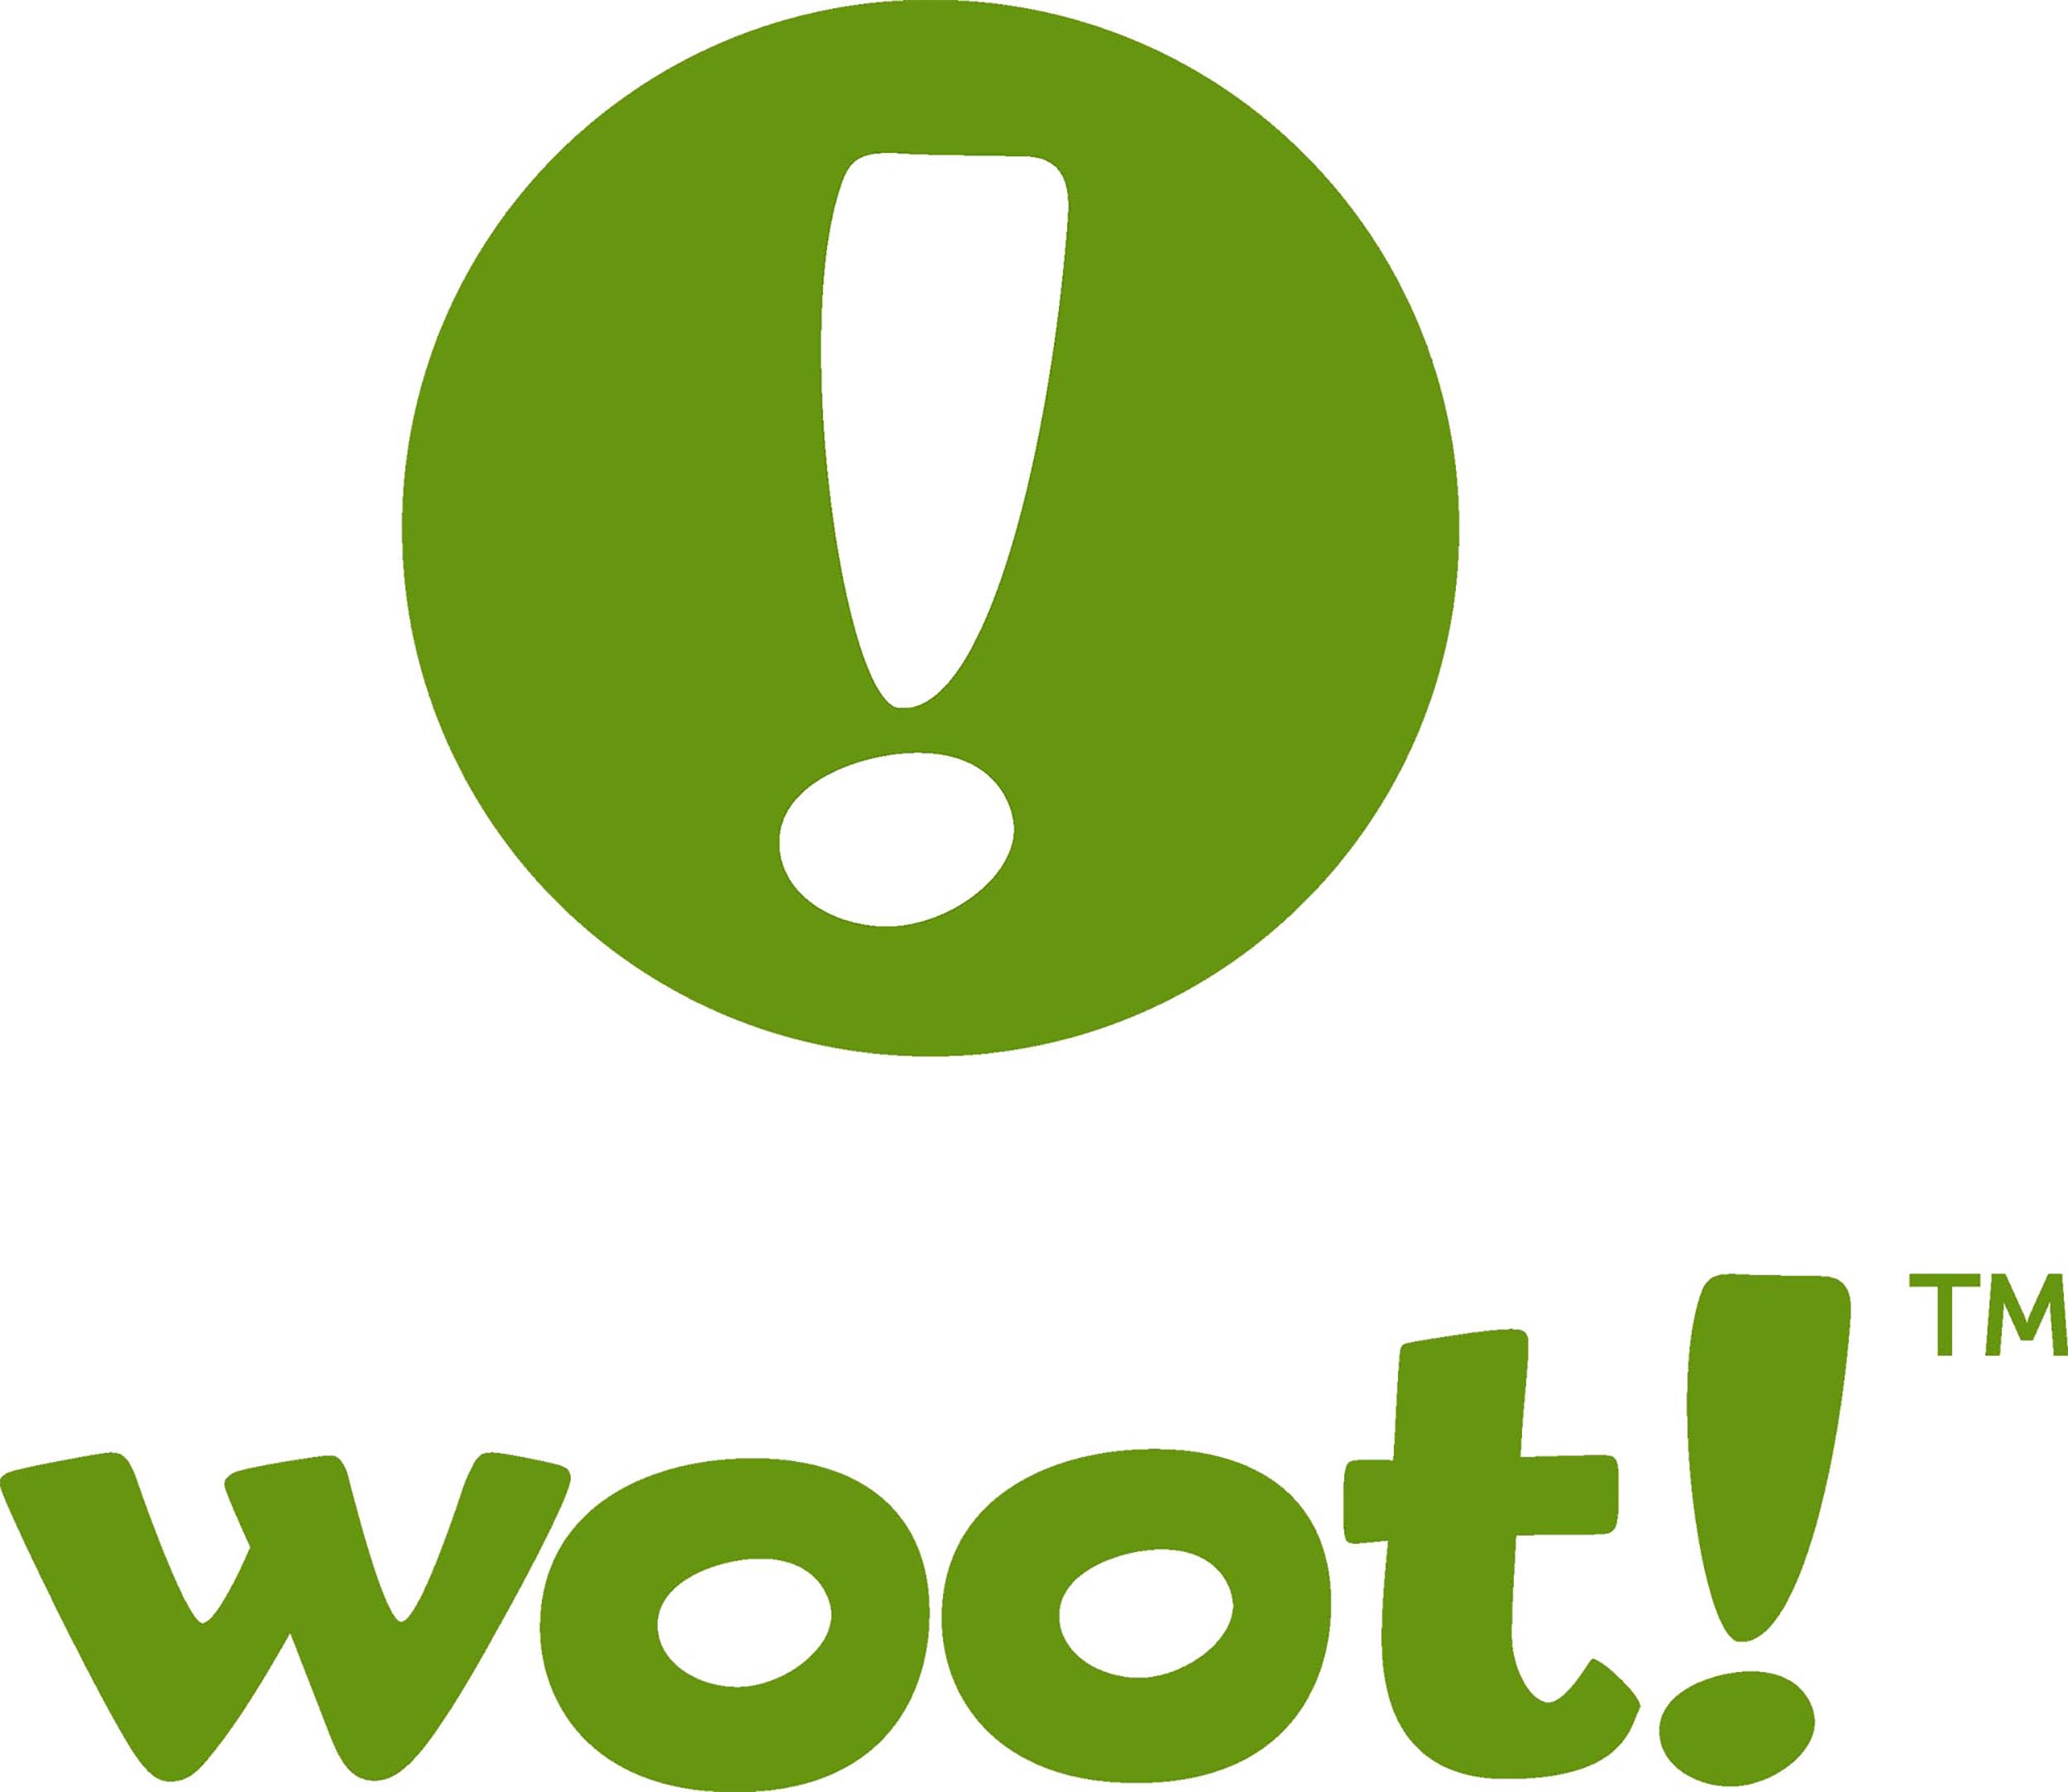 Woot-logos - VirtualSupply